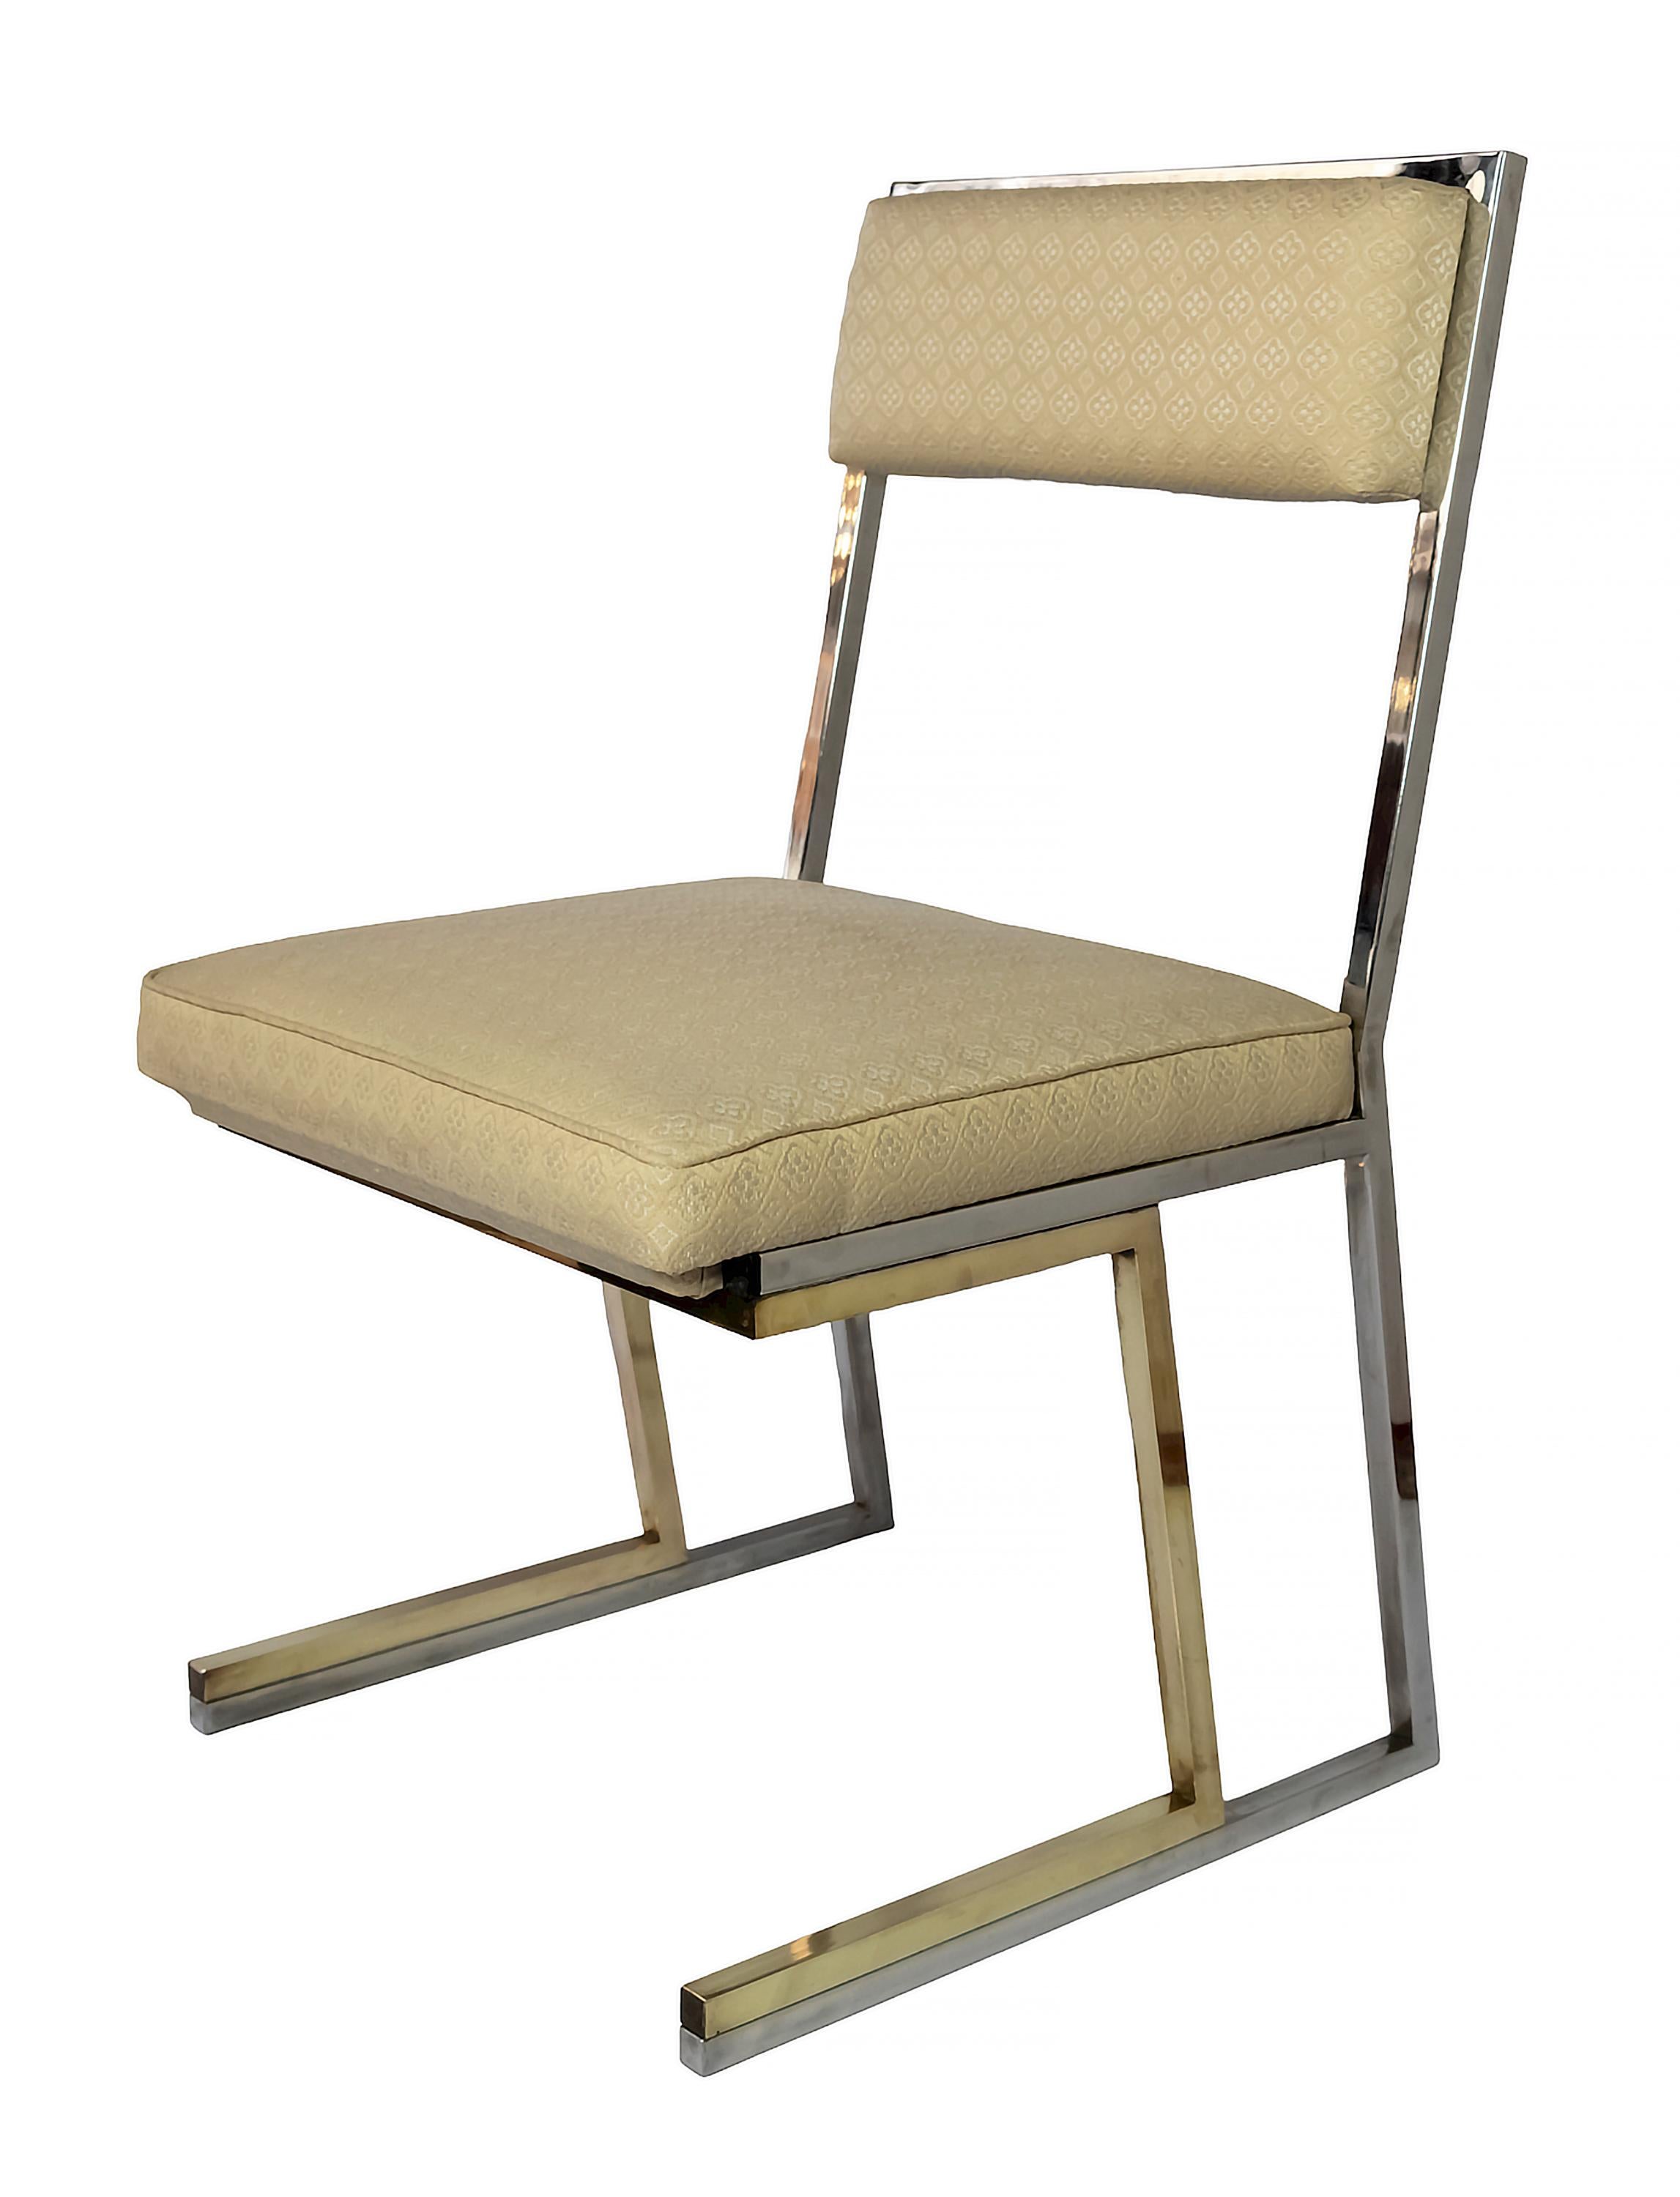 Structure italienne du milieu du siècle en laiton et chrome avec des chaises en textile blanc/crème par Romeo Rega des années 1970.
Très confortable.
Le métal est en très bon état et le textile est très propre comme jamais utilisé.
Signé Romeo